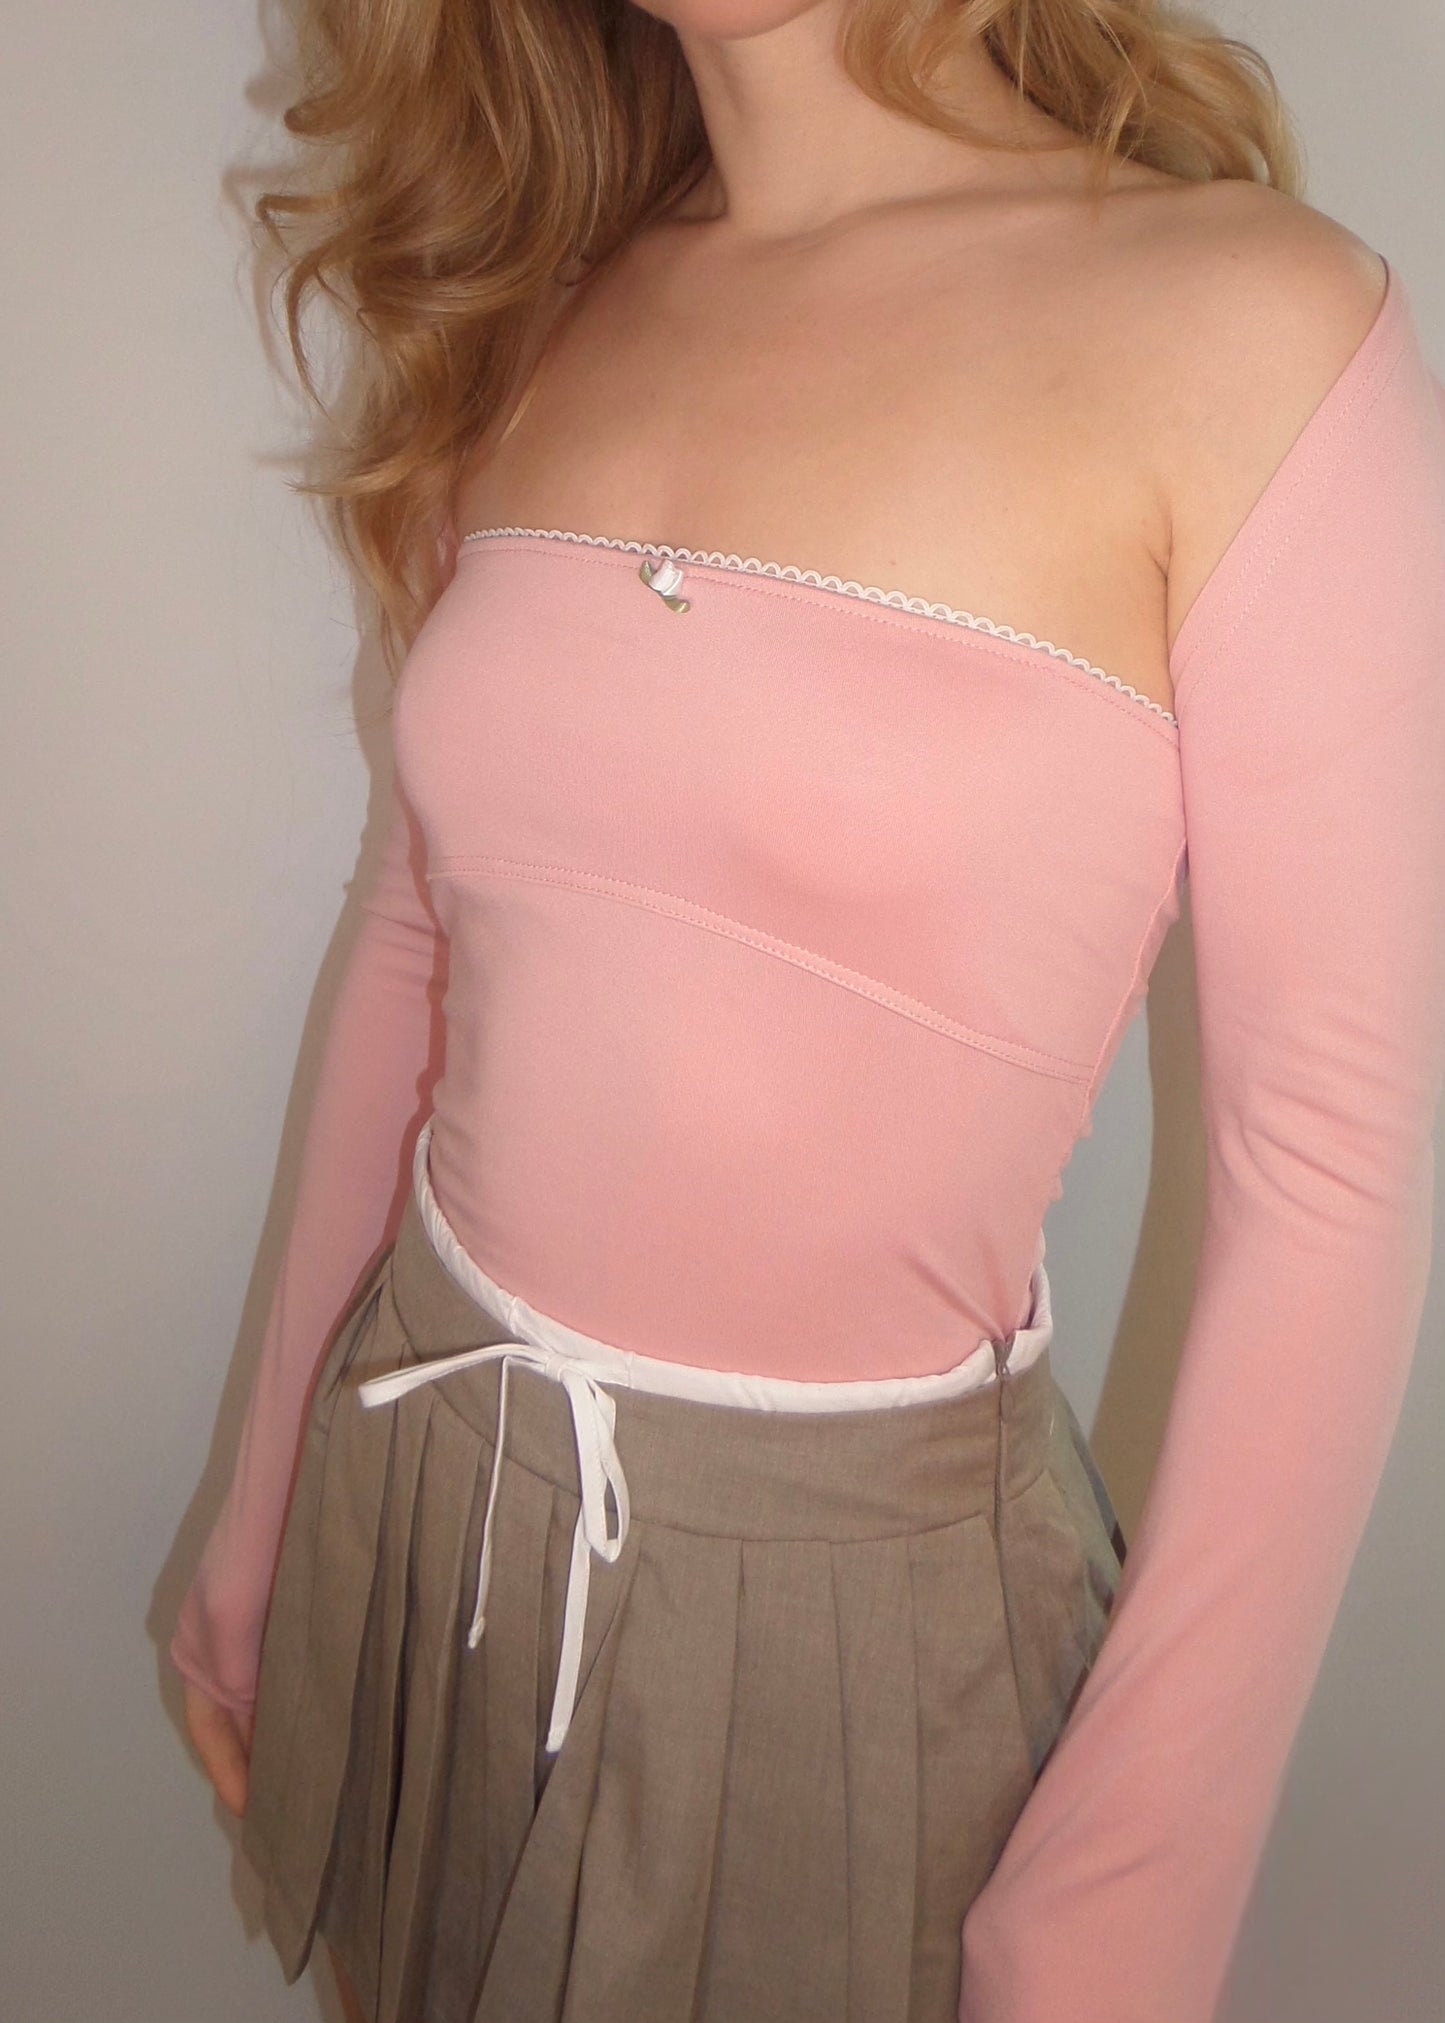 lace corset top 